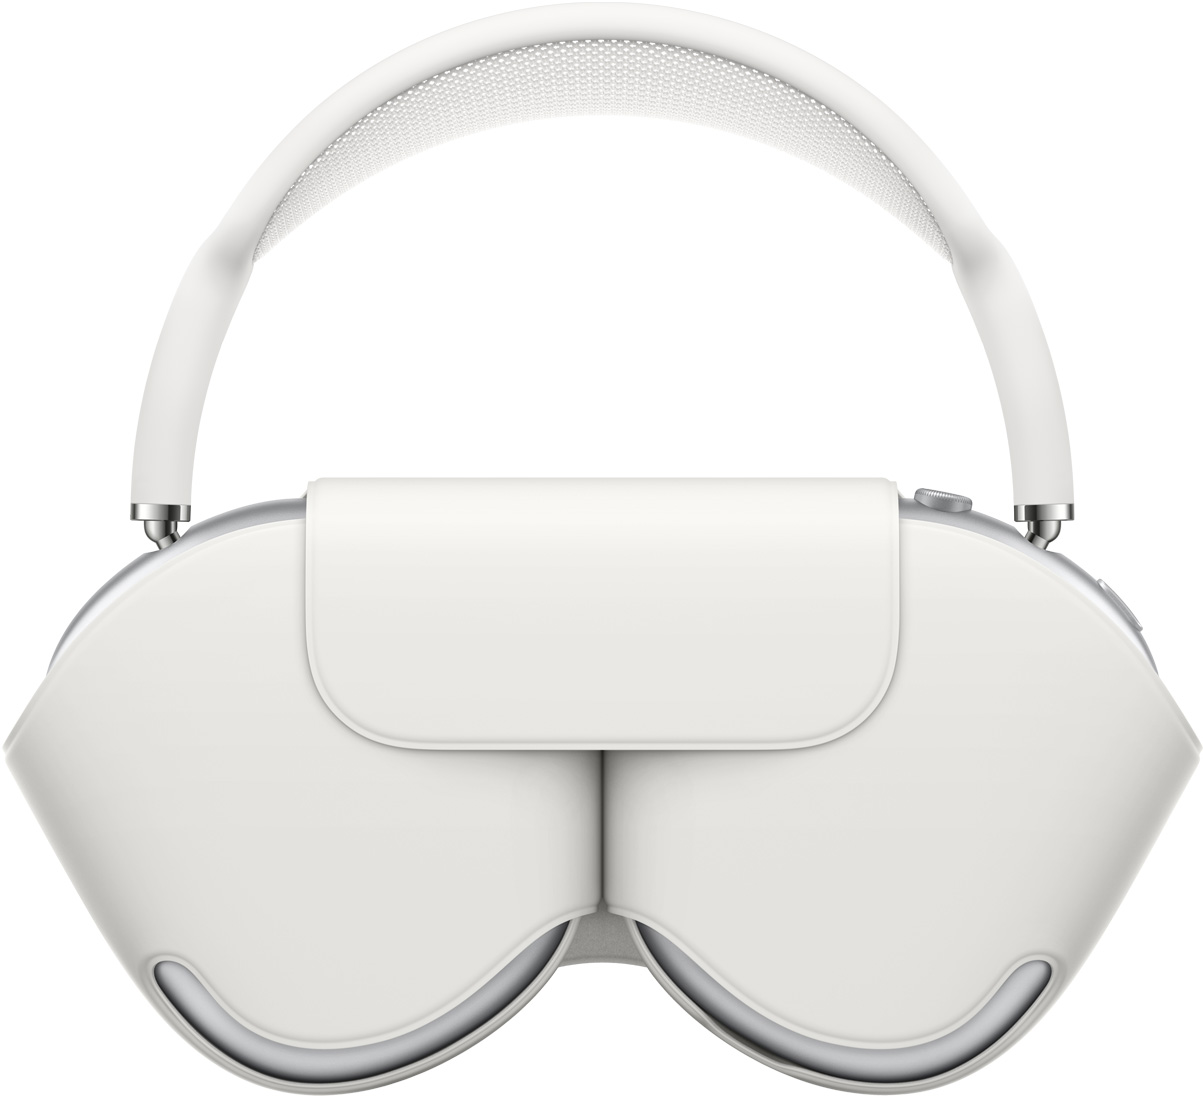 Imagen de unos AirPods Max en plata dentro de una funda Smart Case a juego que protege los auriculares y deja la diadema a la vista.